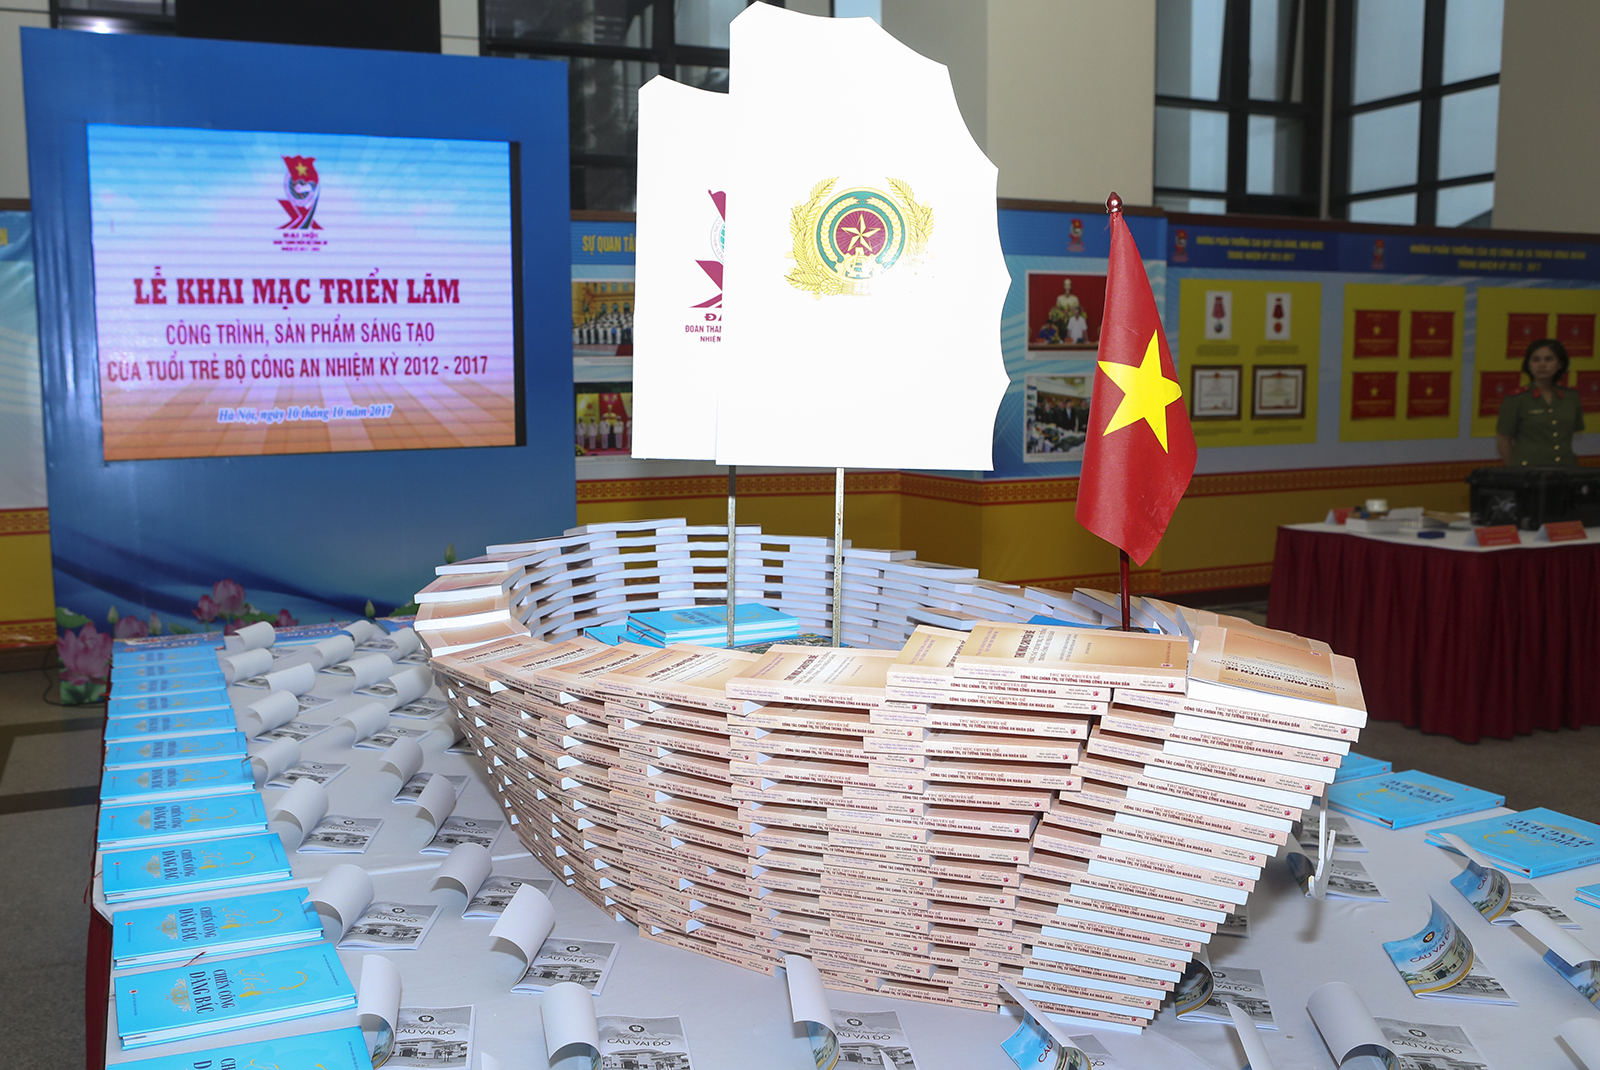 Triển lãm sẽ diễn ra trong 2 ngày 10-11/10 tại Hội trường 47 Phạm Văn Đồng, Bộ Công an